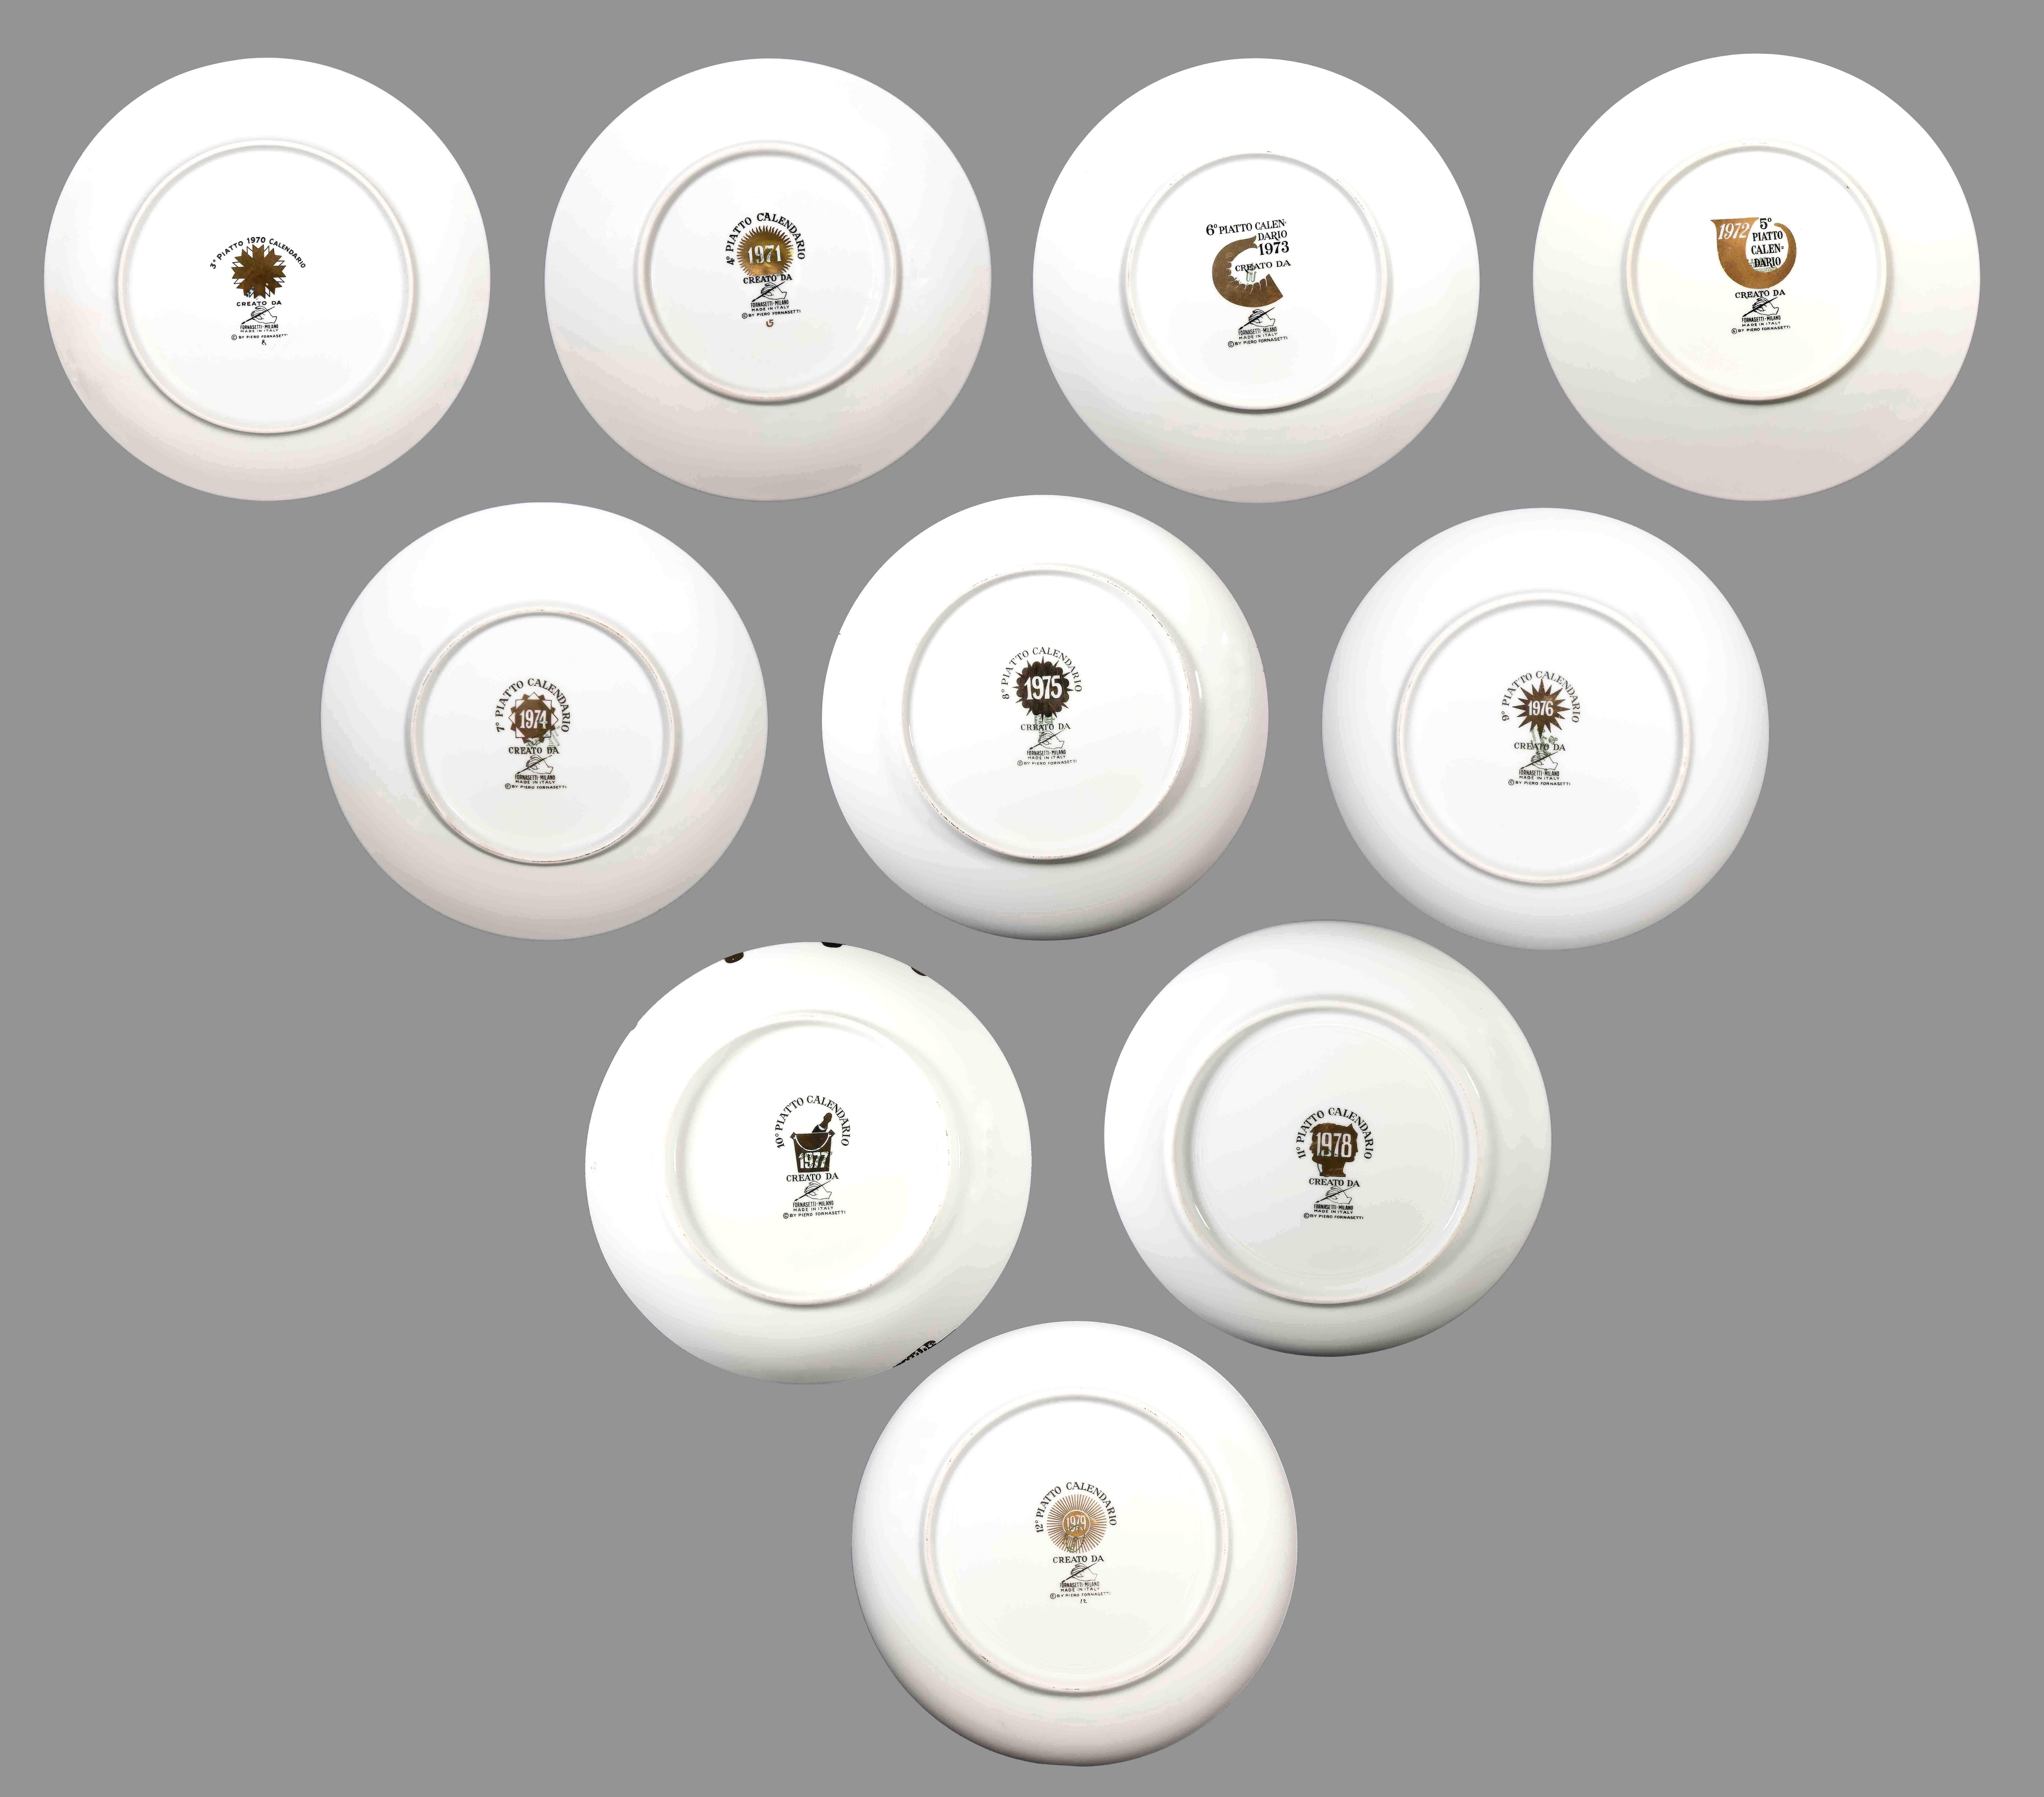 Assiette des années 1970, série Calendar est un ensemble de 9 assiettes en porcelaine sérigraphiées, conçues par Piero Fornasetti au cours des années 1970, de la série Calendario, la série des plats de bonne année.
Il comprend toutes les années à